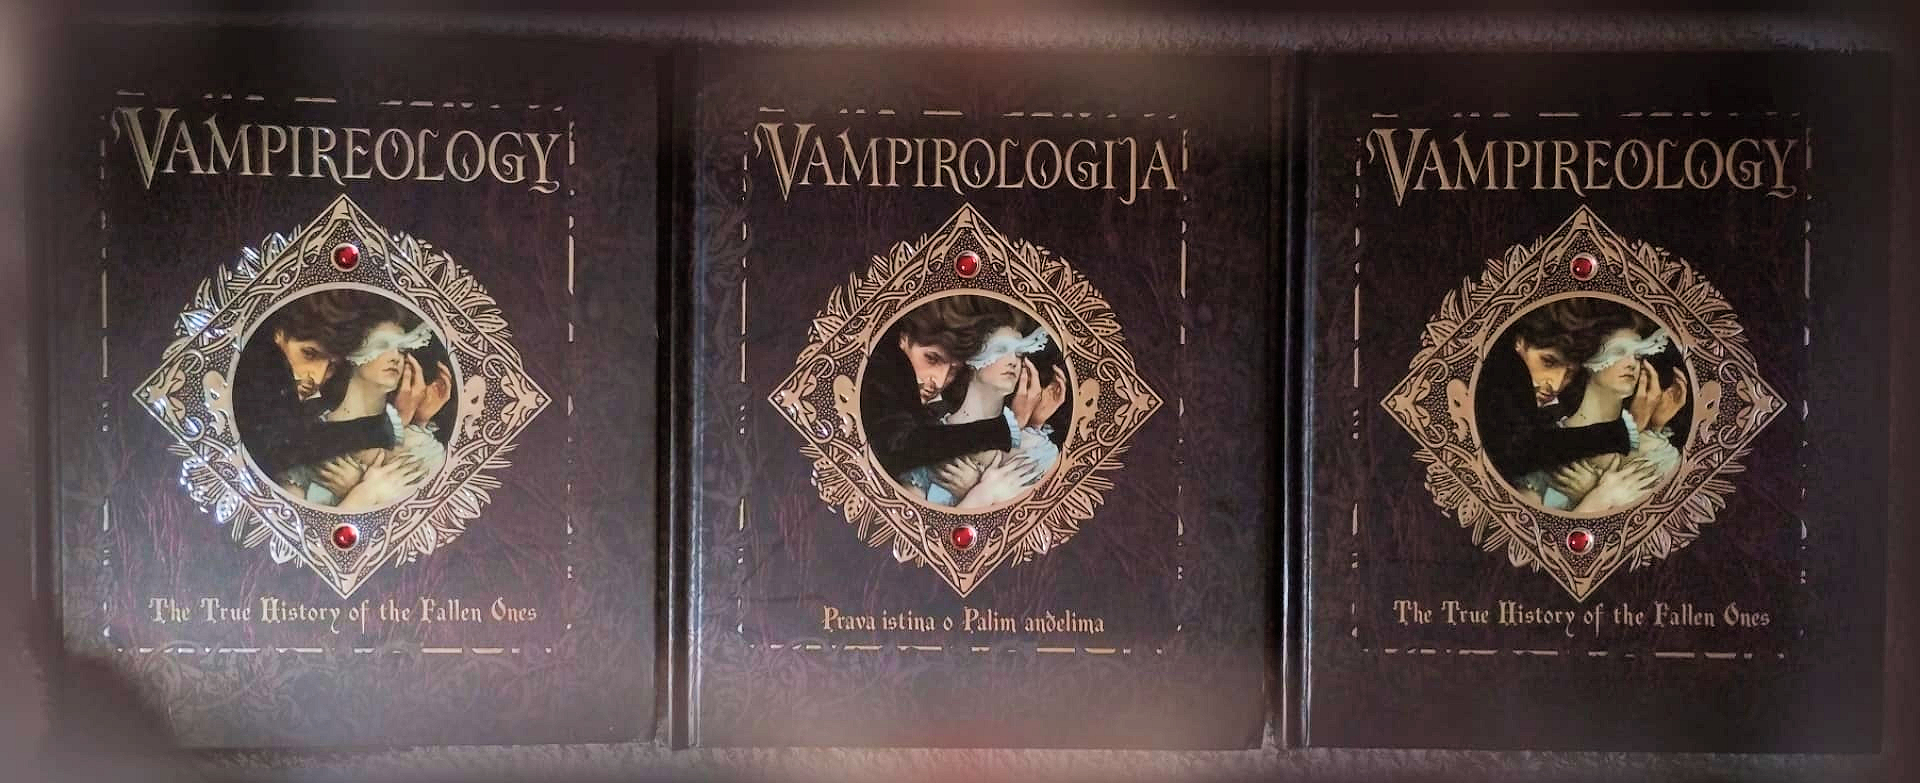 Vampirologija ~ Vampireology